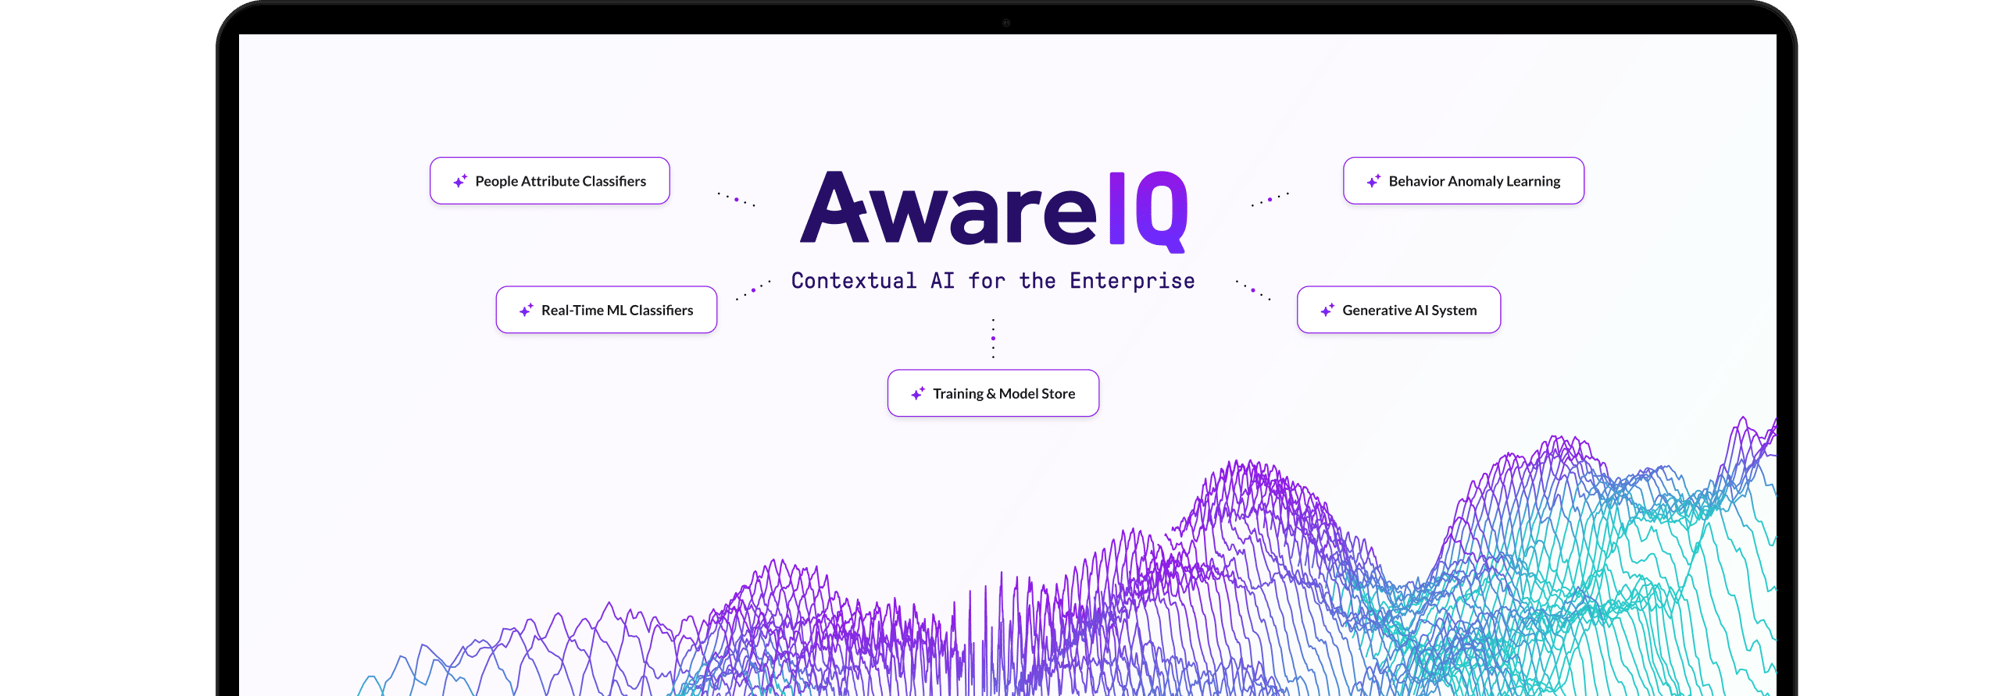 AwareIQ_web_laptop 2-1